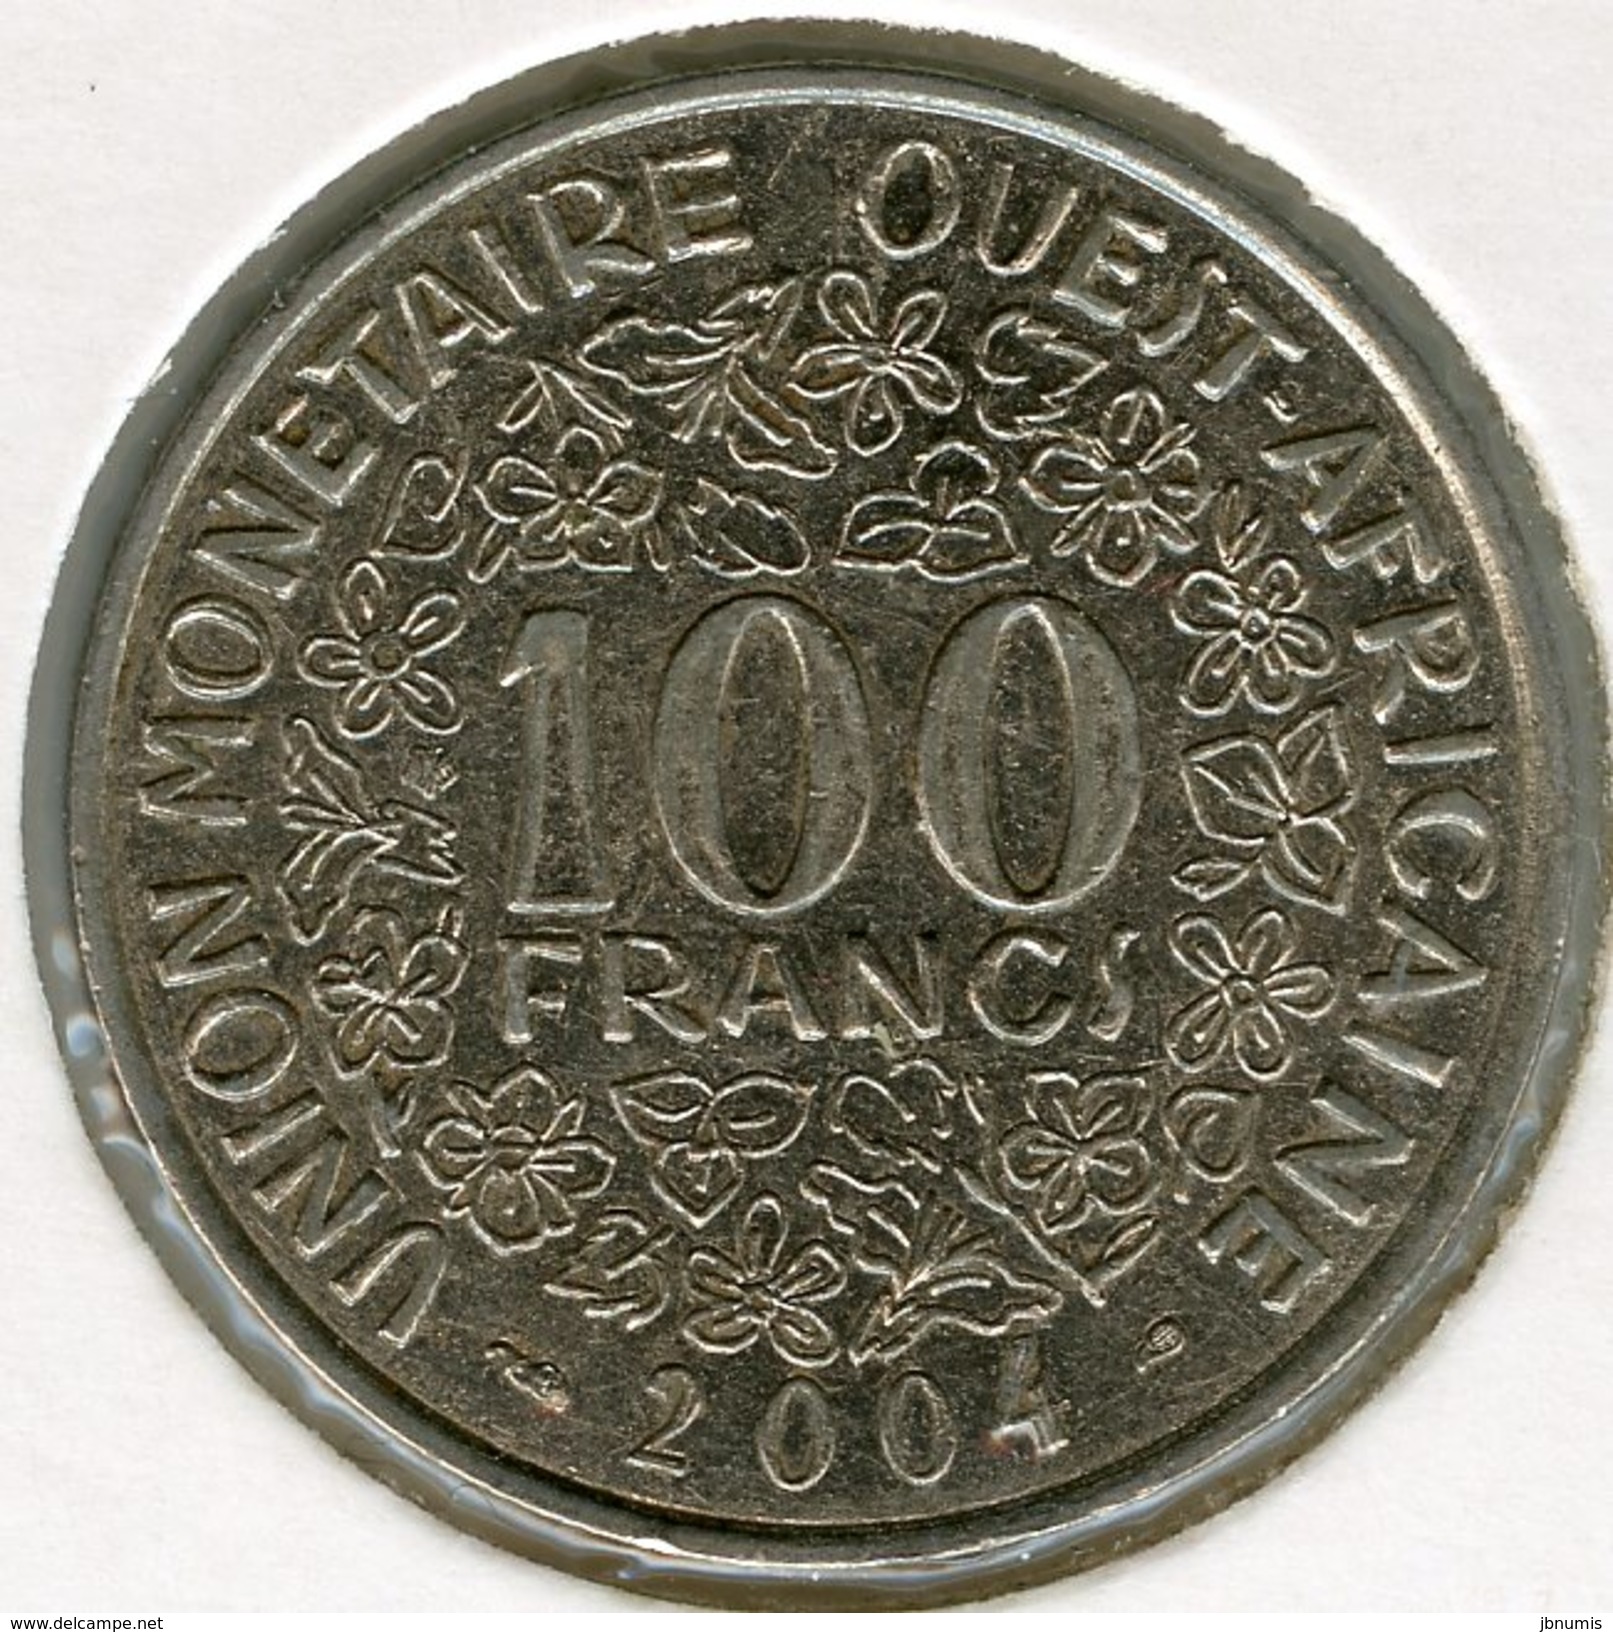 Afrique De L´Ouest West African States Union Monétaire 100 Francs 2004 BCEAO UMOA KM 4 - Other - Africa